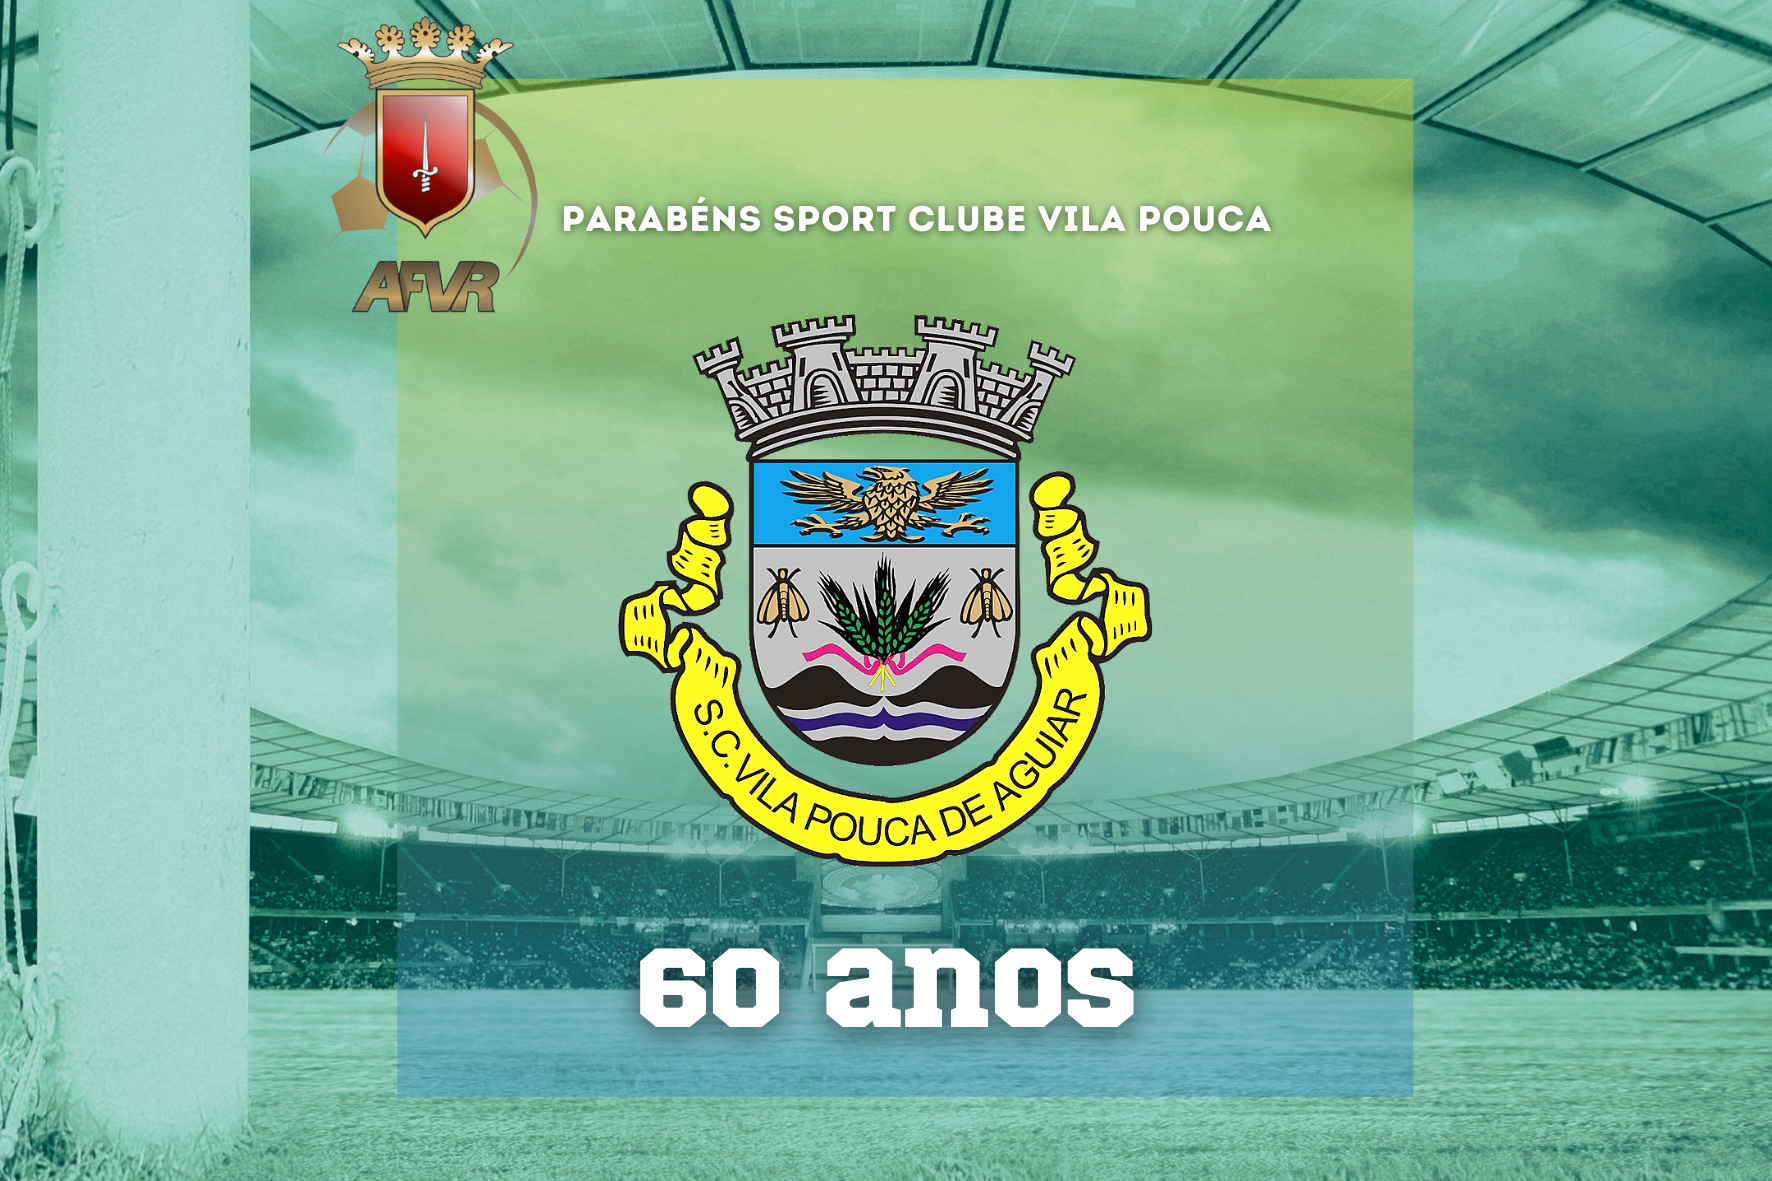 O SC Vila Pouca de Aguiar está de Parabéns!